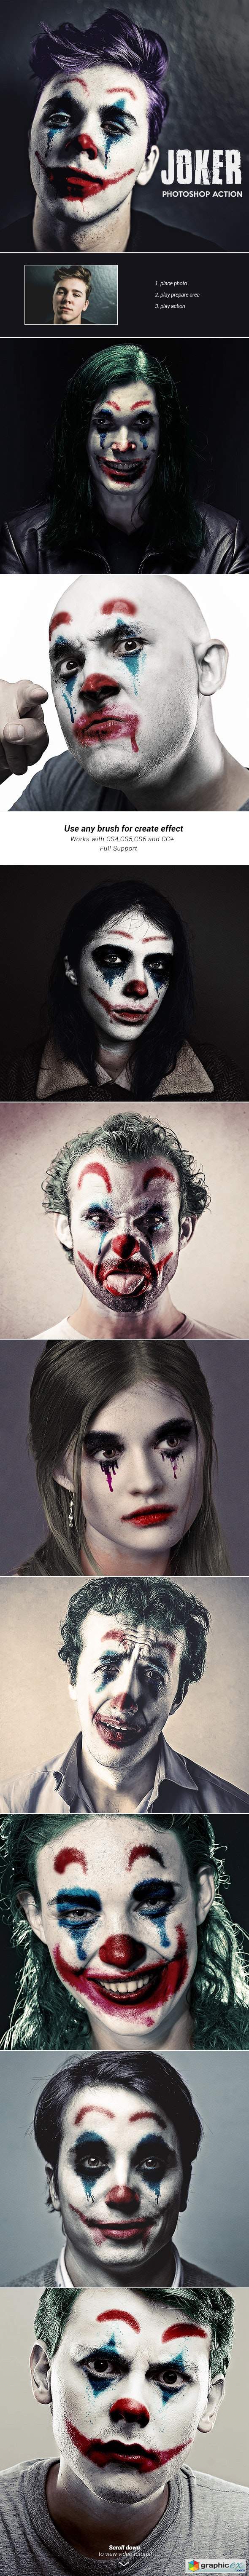 Joker - Photoshop Action